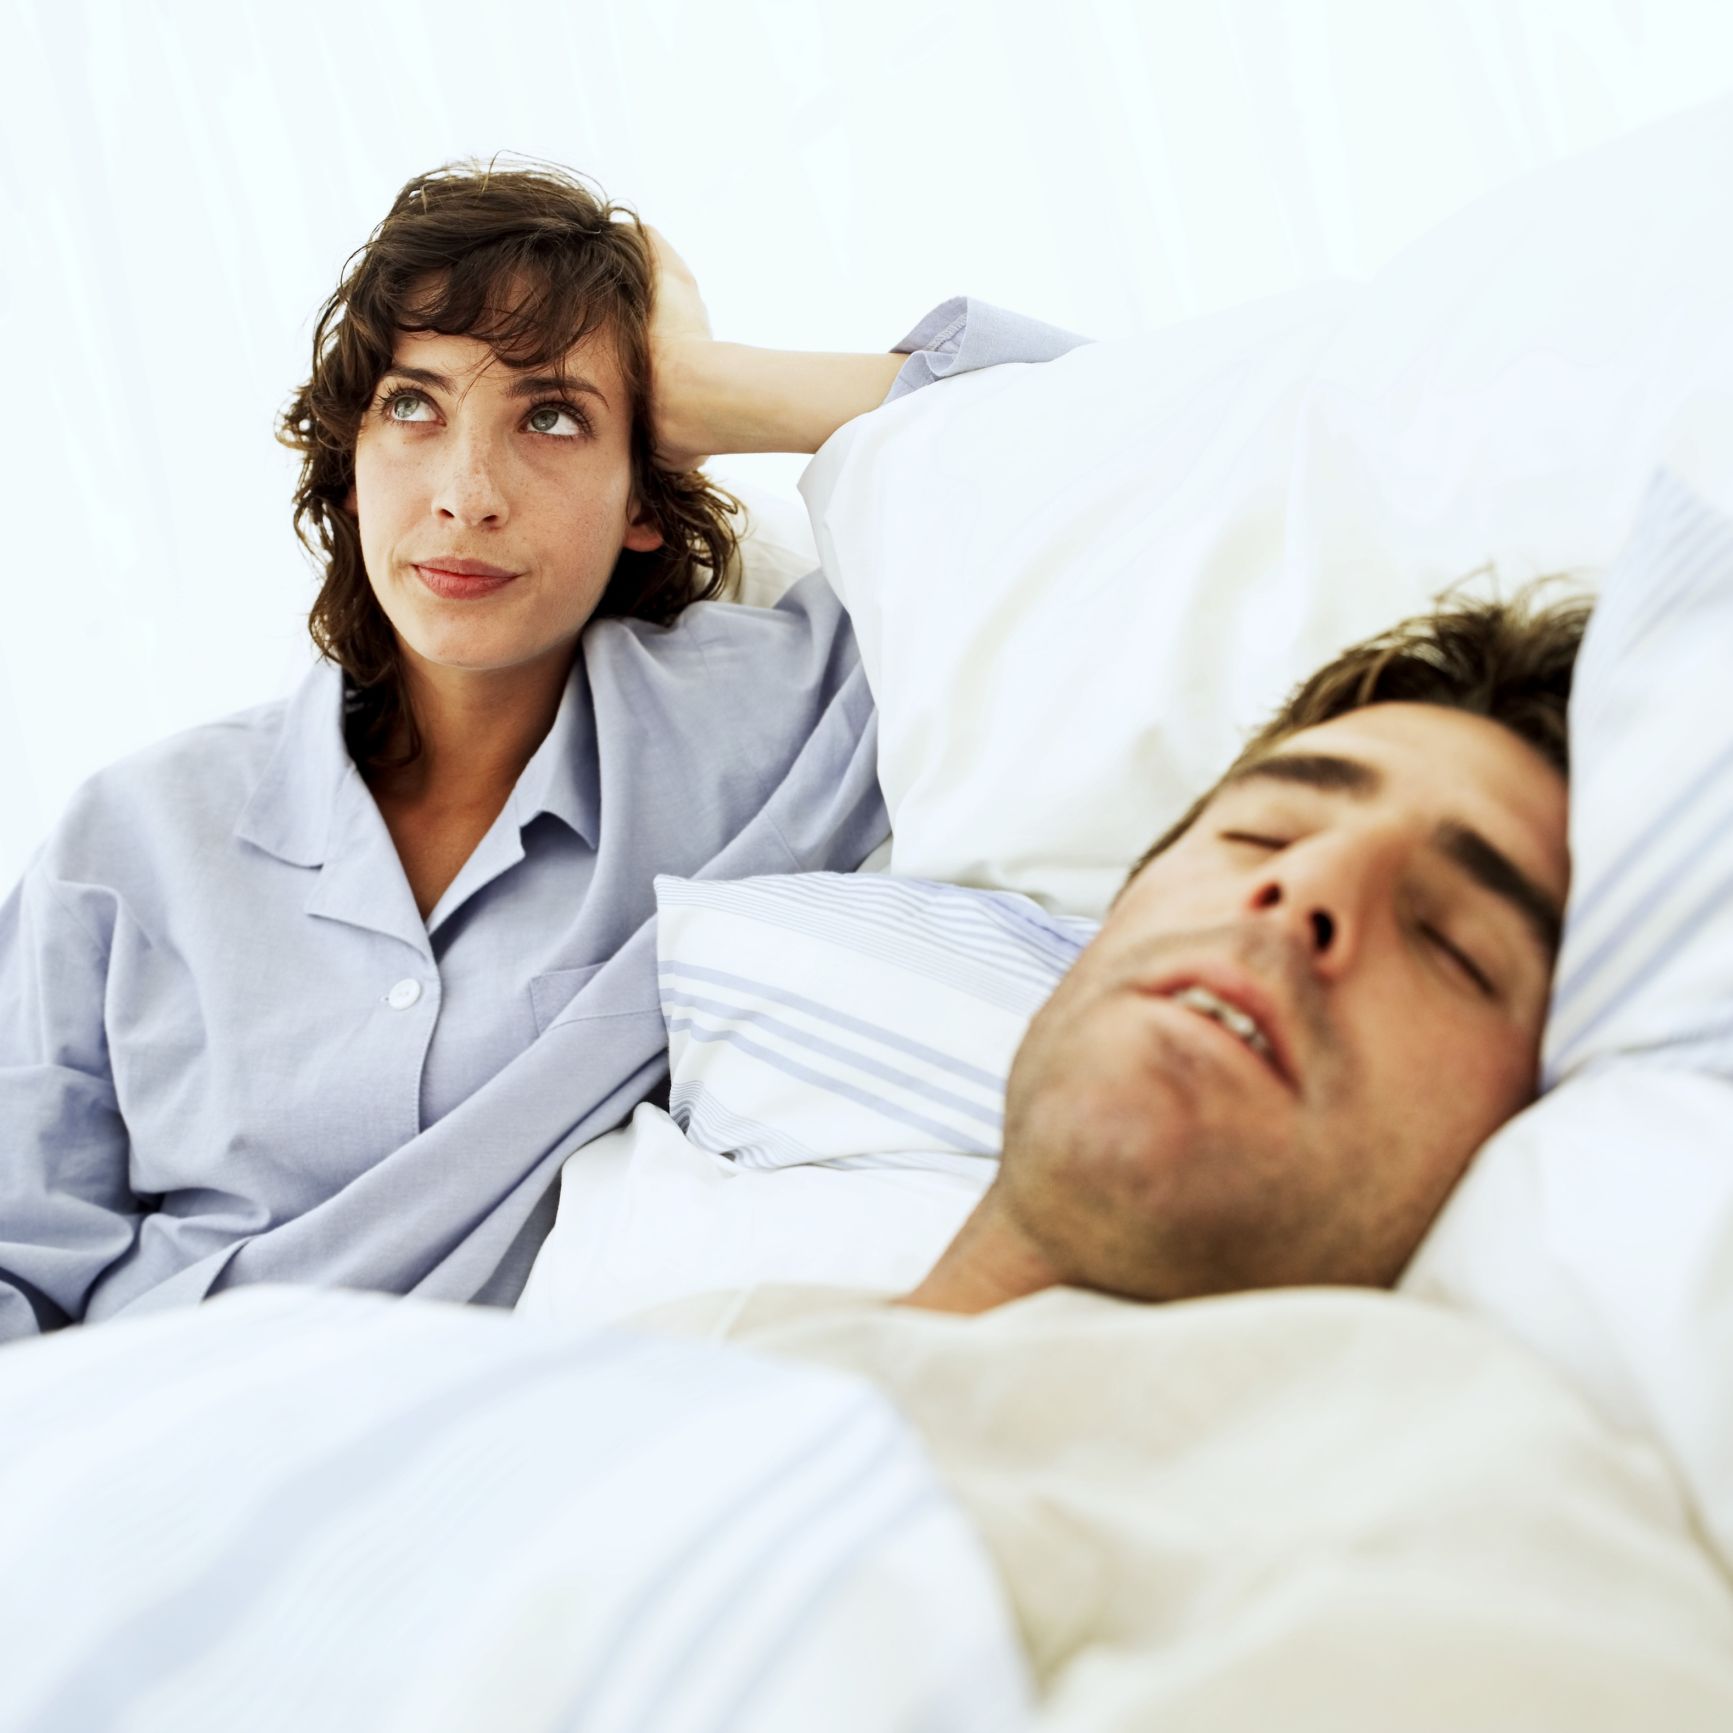 Group Sleep Sex - Men fall asleep, women cuddle and other post-sex behaviors that affect  relationships | CNN